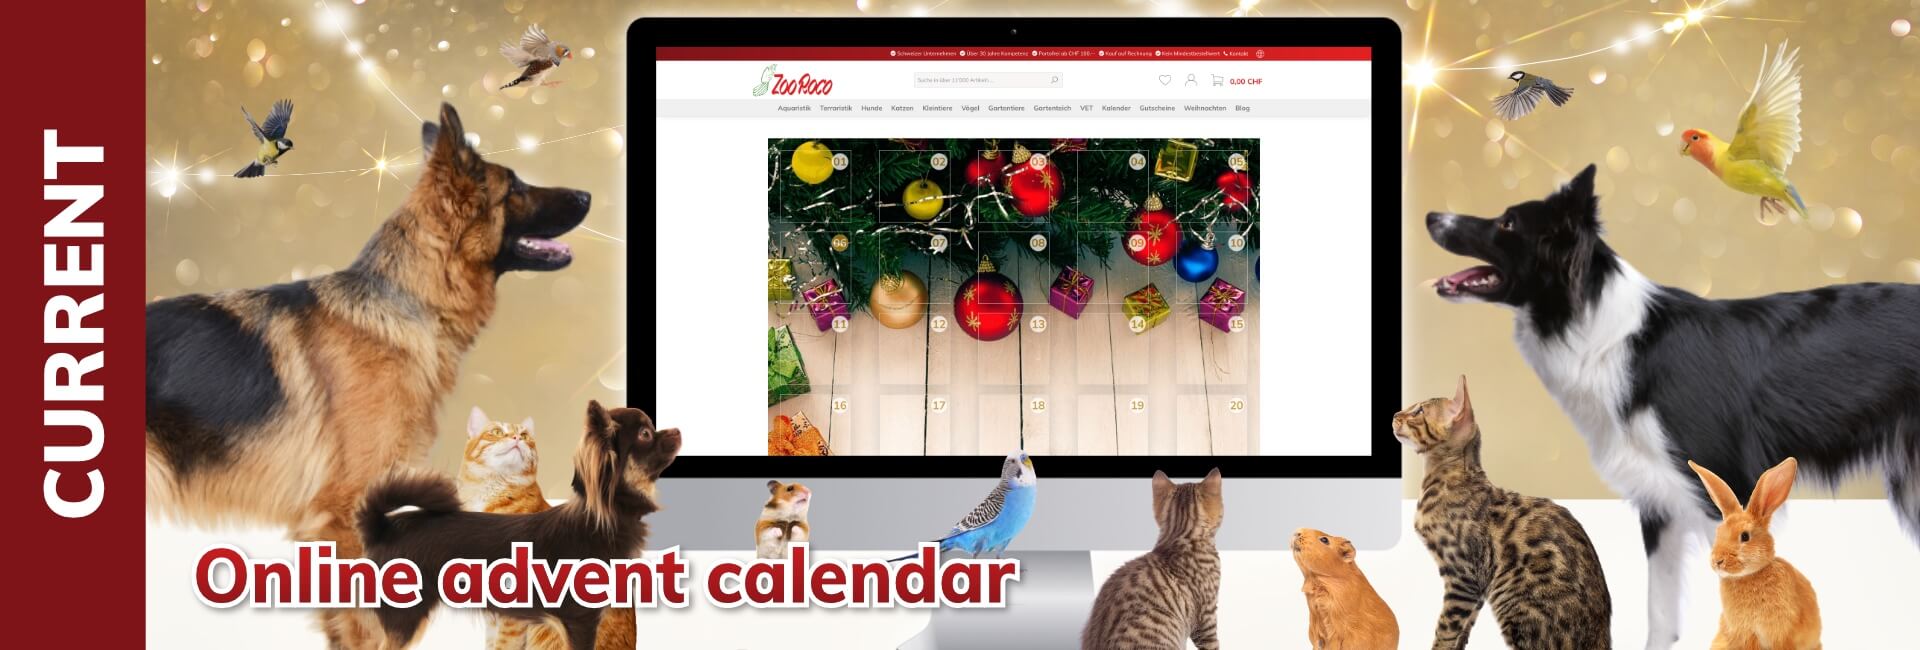 Online advent calendar